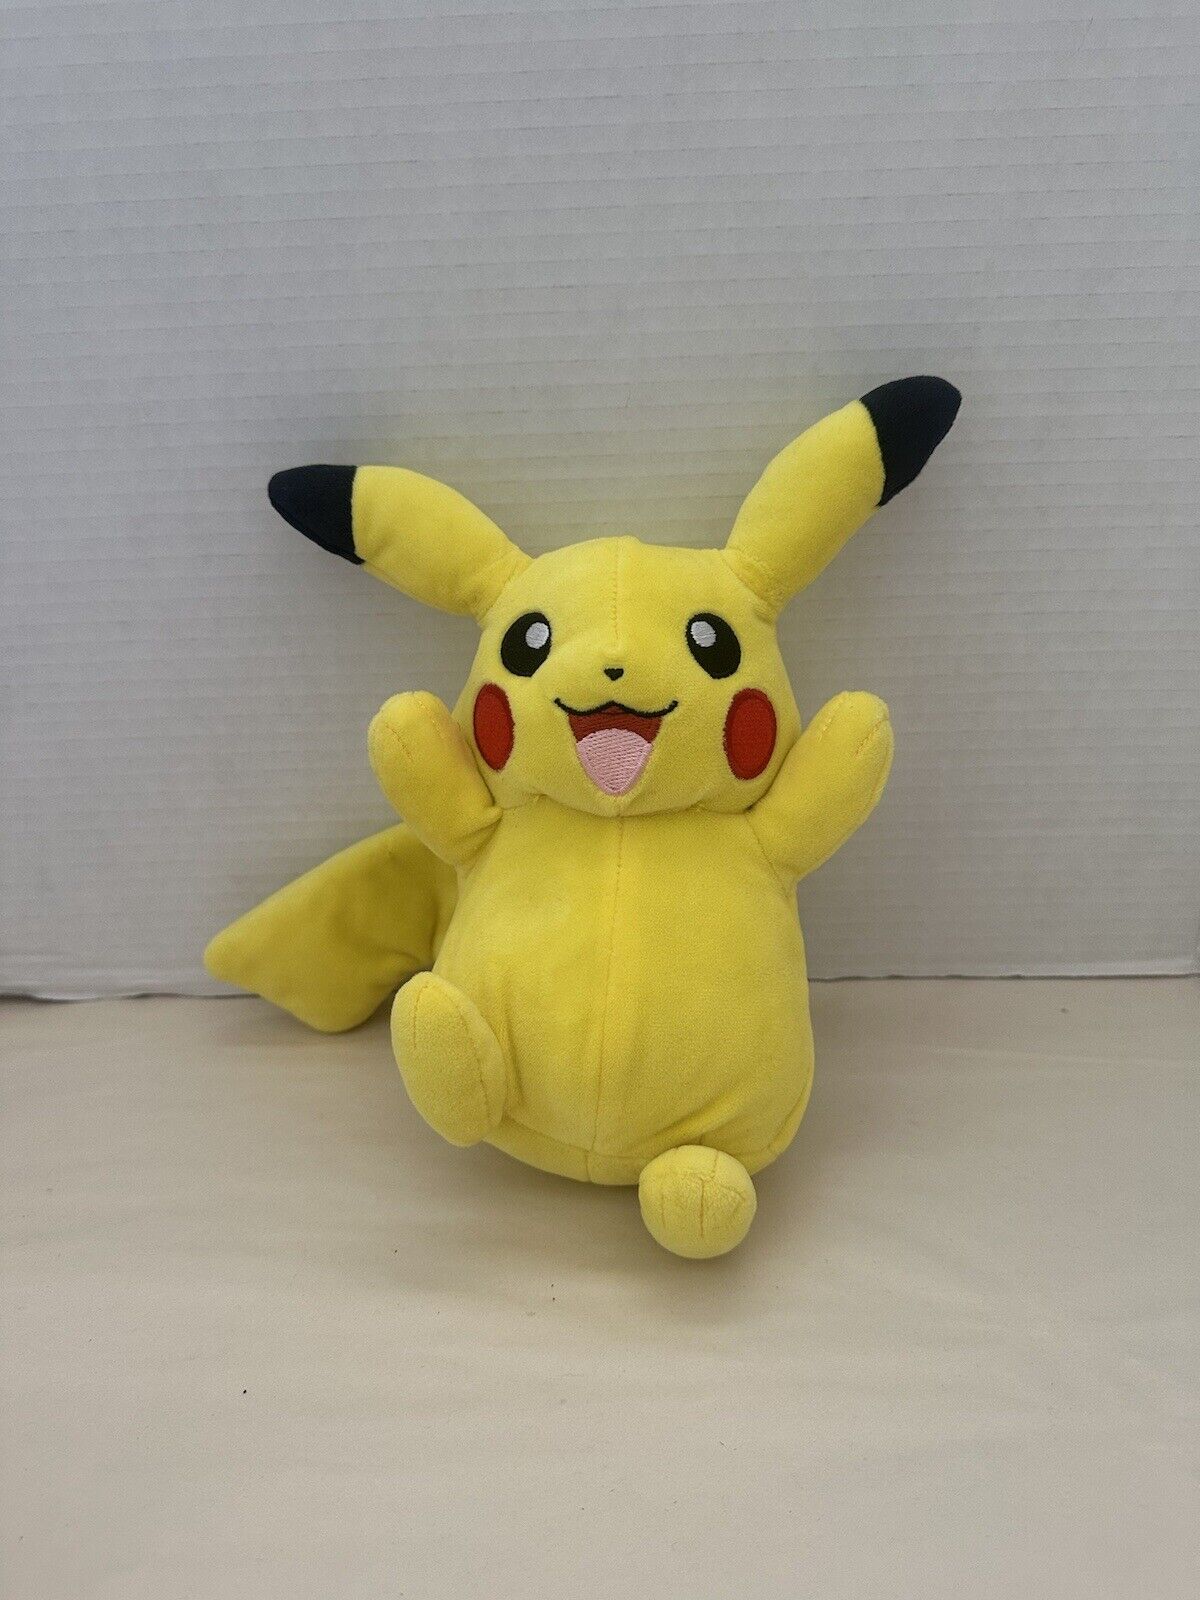 Small Plush Pokemon Pikachu Stuffed Toy